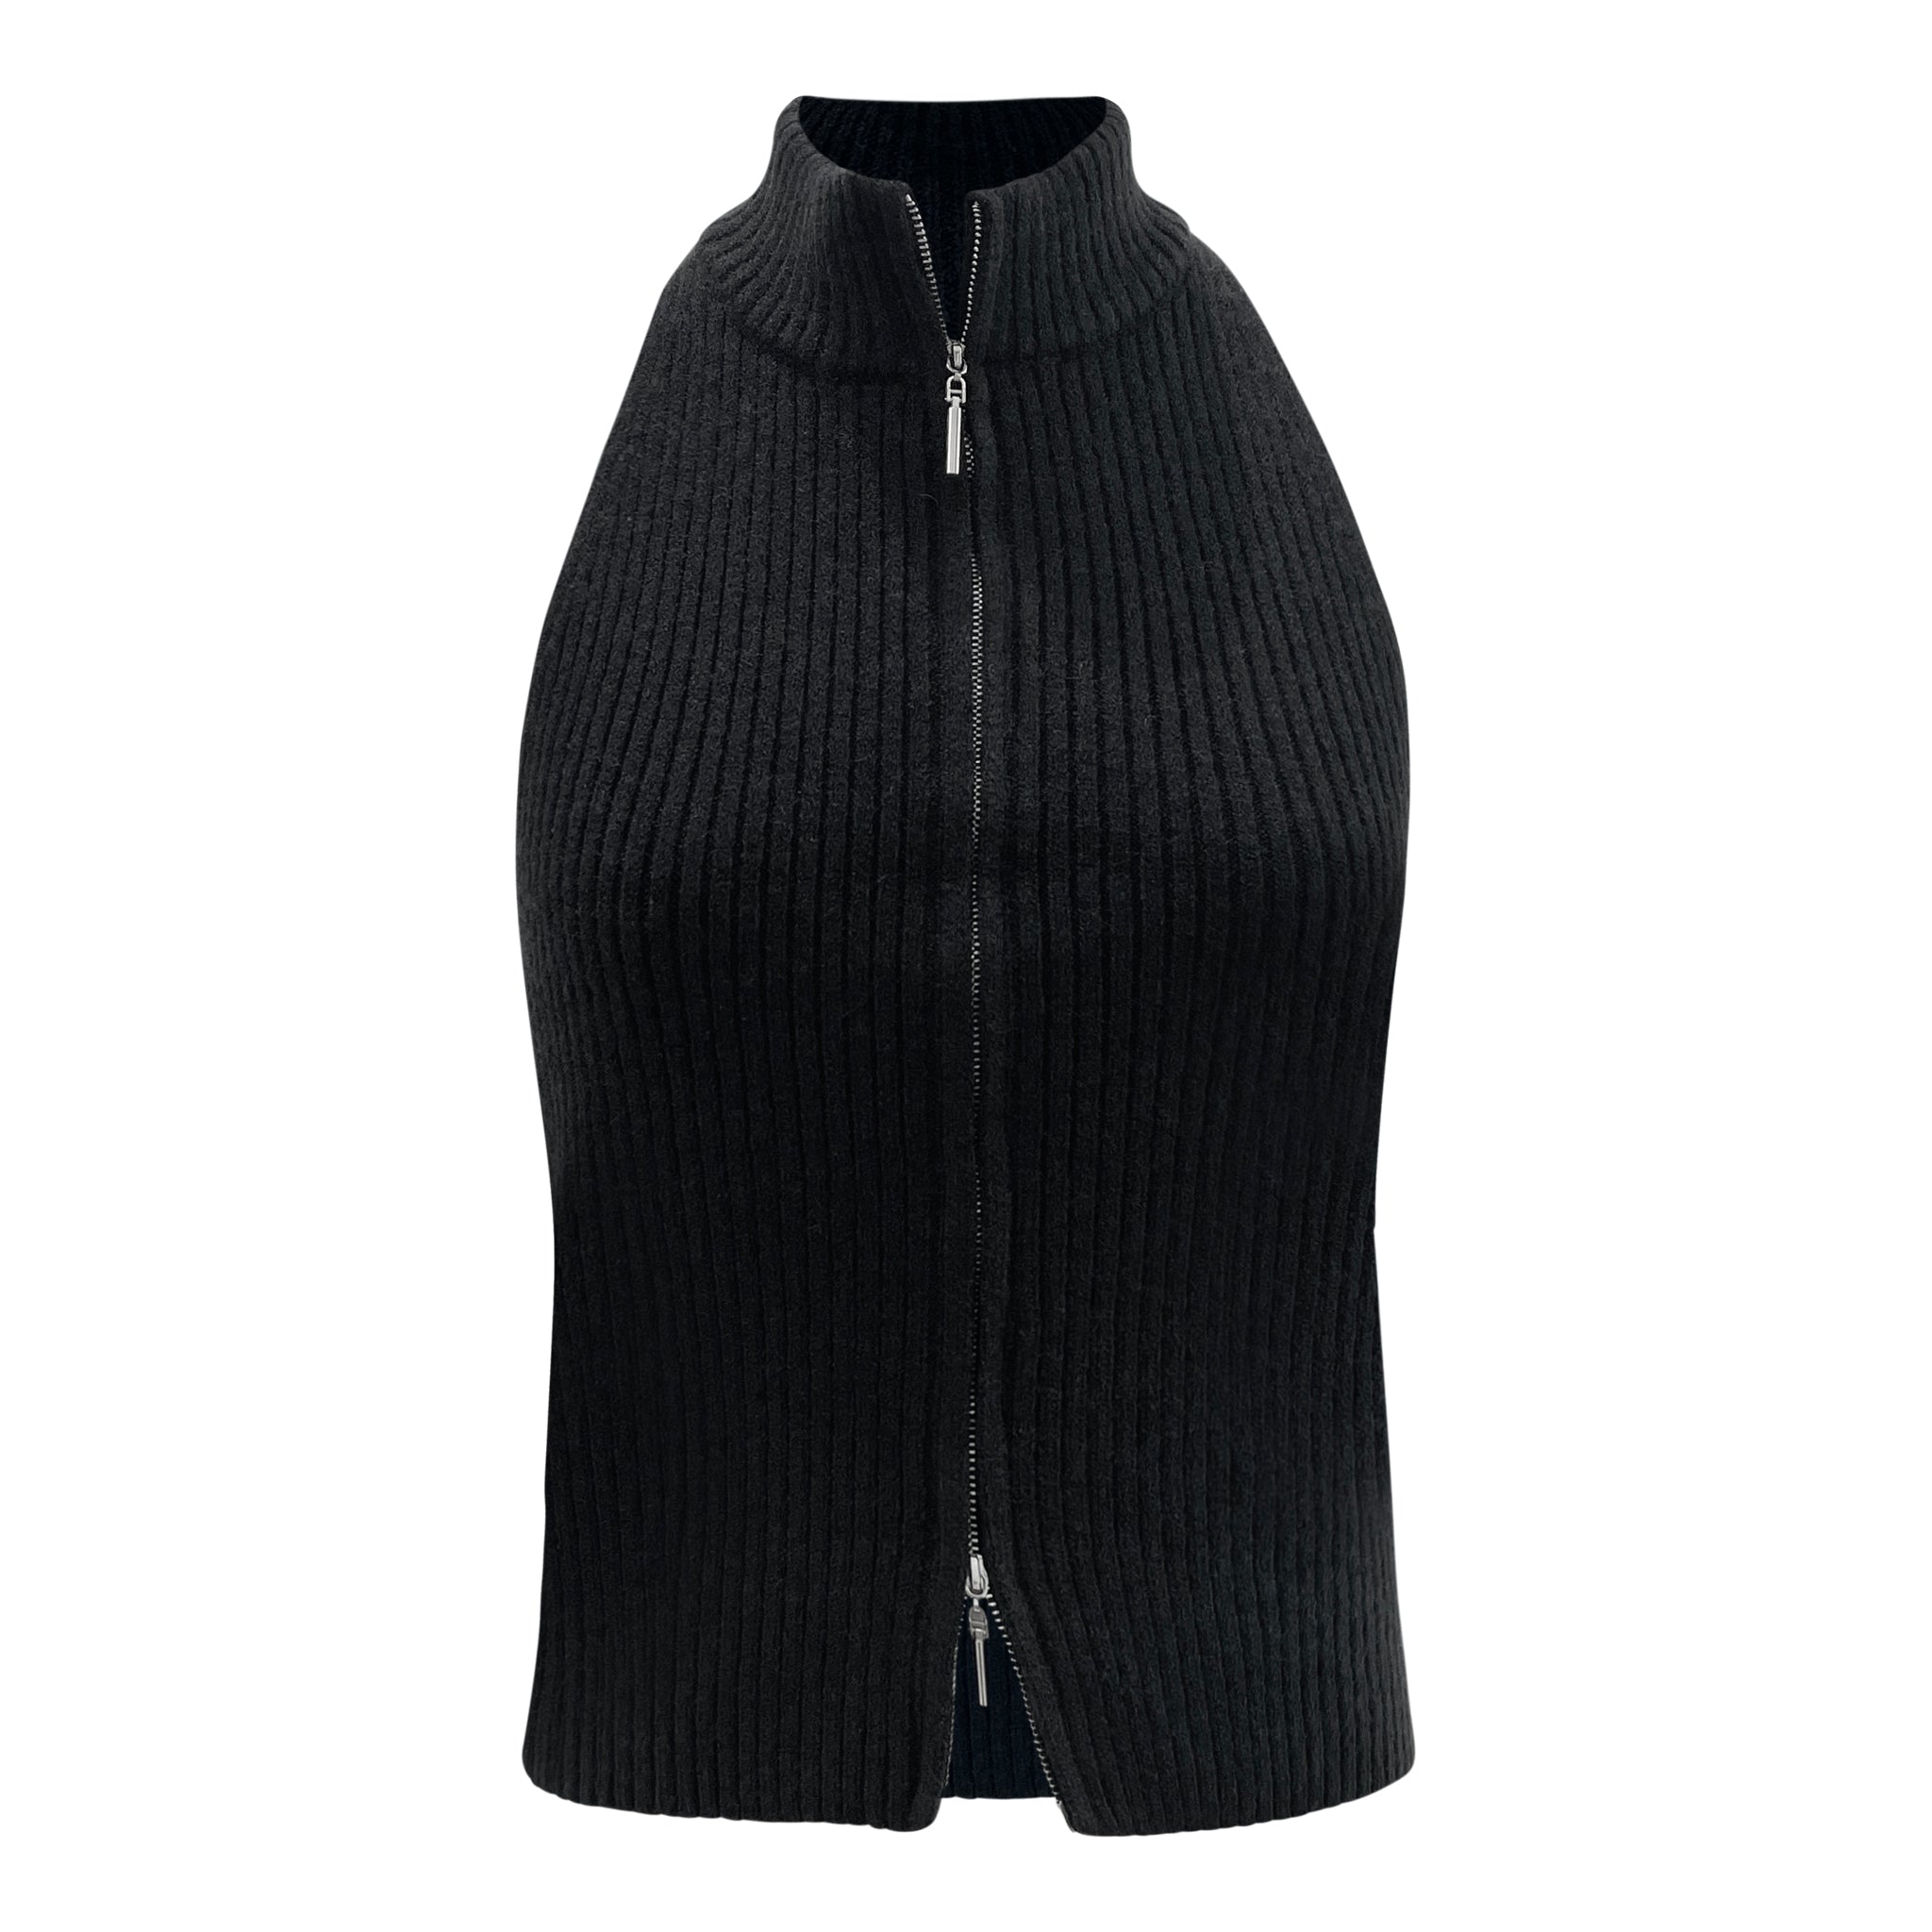 zip knit halter top (FINAL SALE)